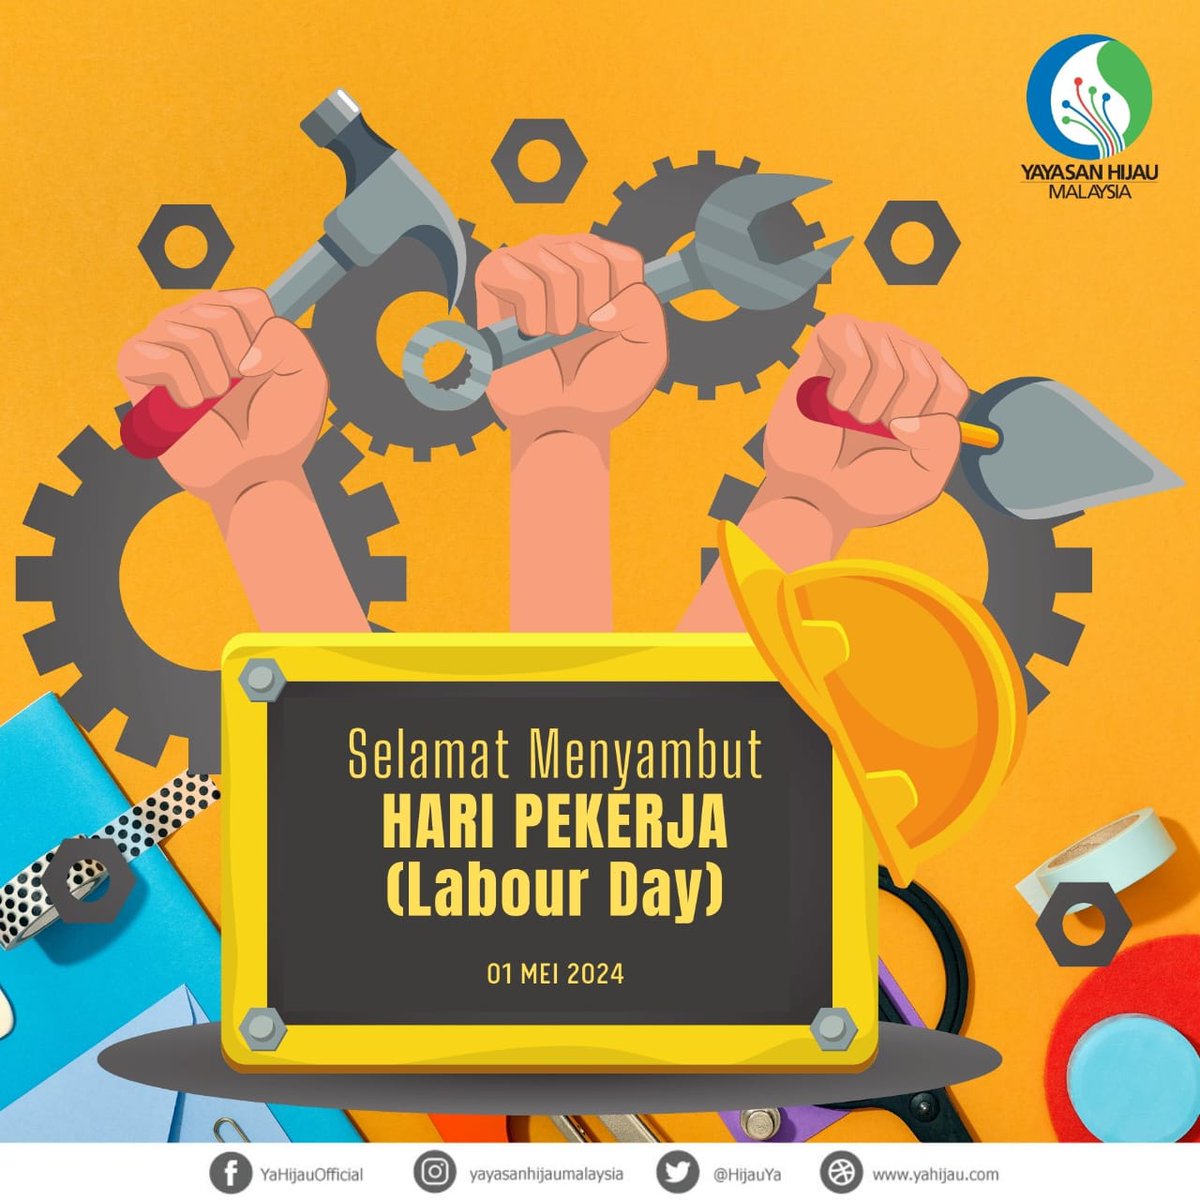 Pekerja adalah tulang belakang setiap masyarakat. Selamat Hari Pekerja diucapkan kepada semua yang bekerja keras demi impian mereka dan membangunkan dunia yang lebih baik.

'Pekerja Kesuma Bangsa'

#YayasanHijauMalaysia #iMakeMyGreenDifferent #HariPekerja #PekerjaKesumaBangsa